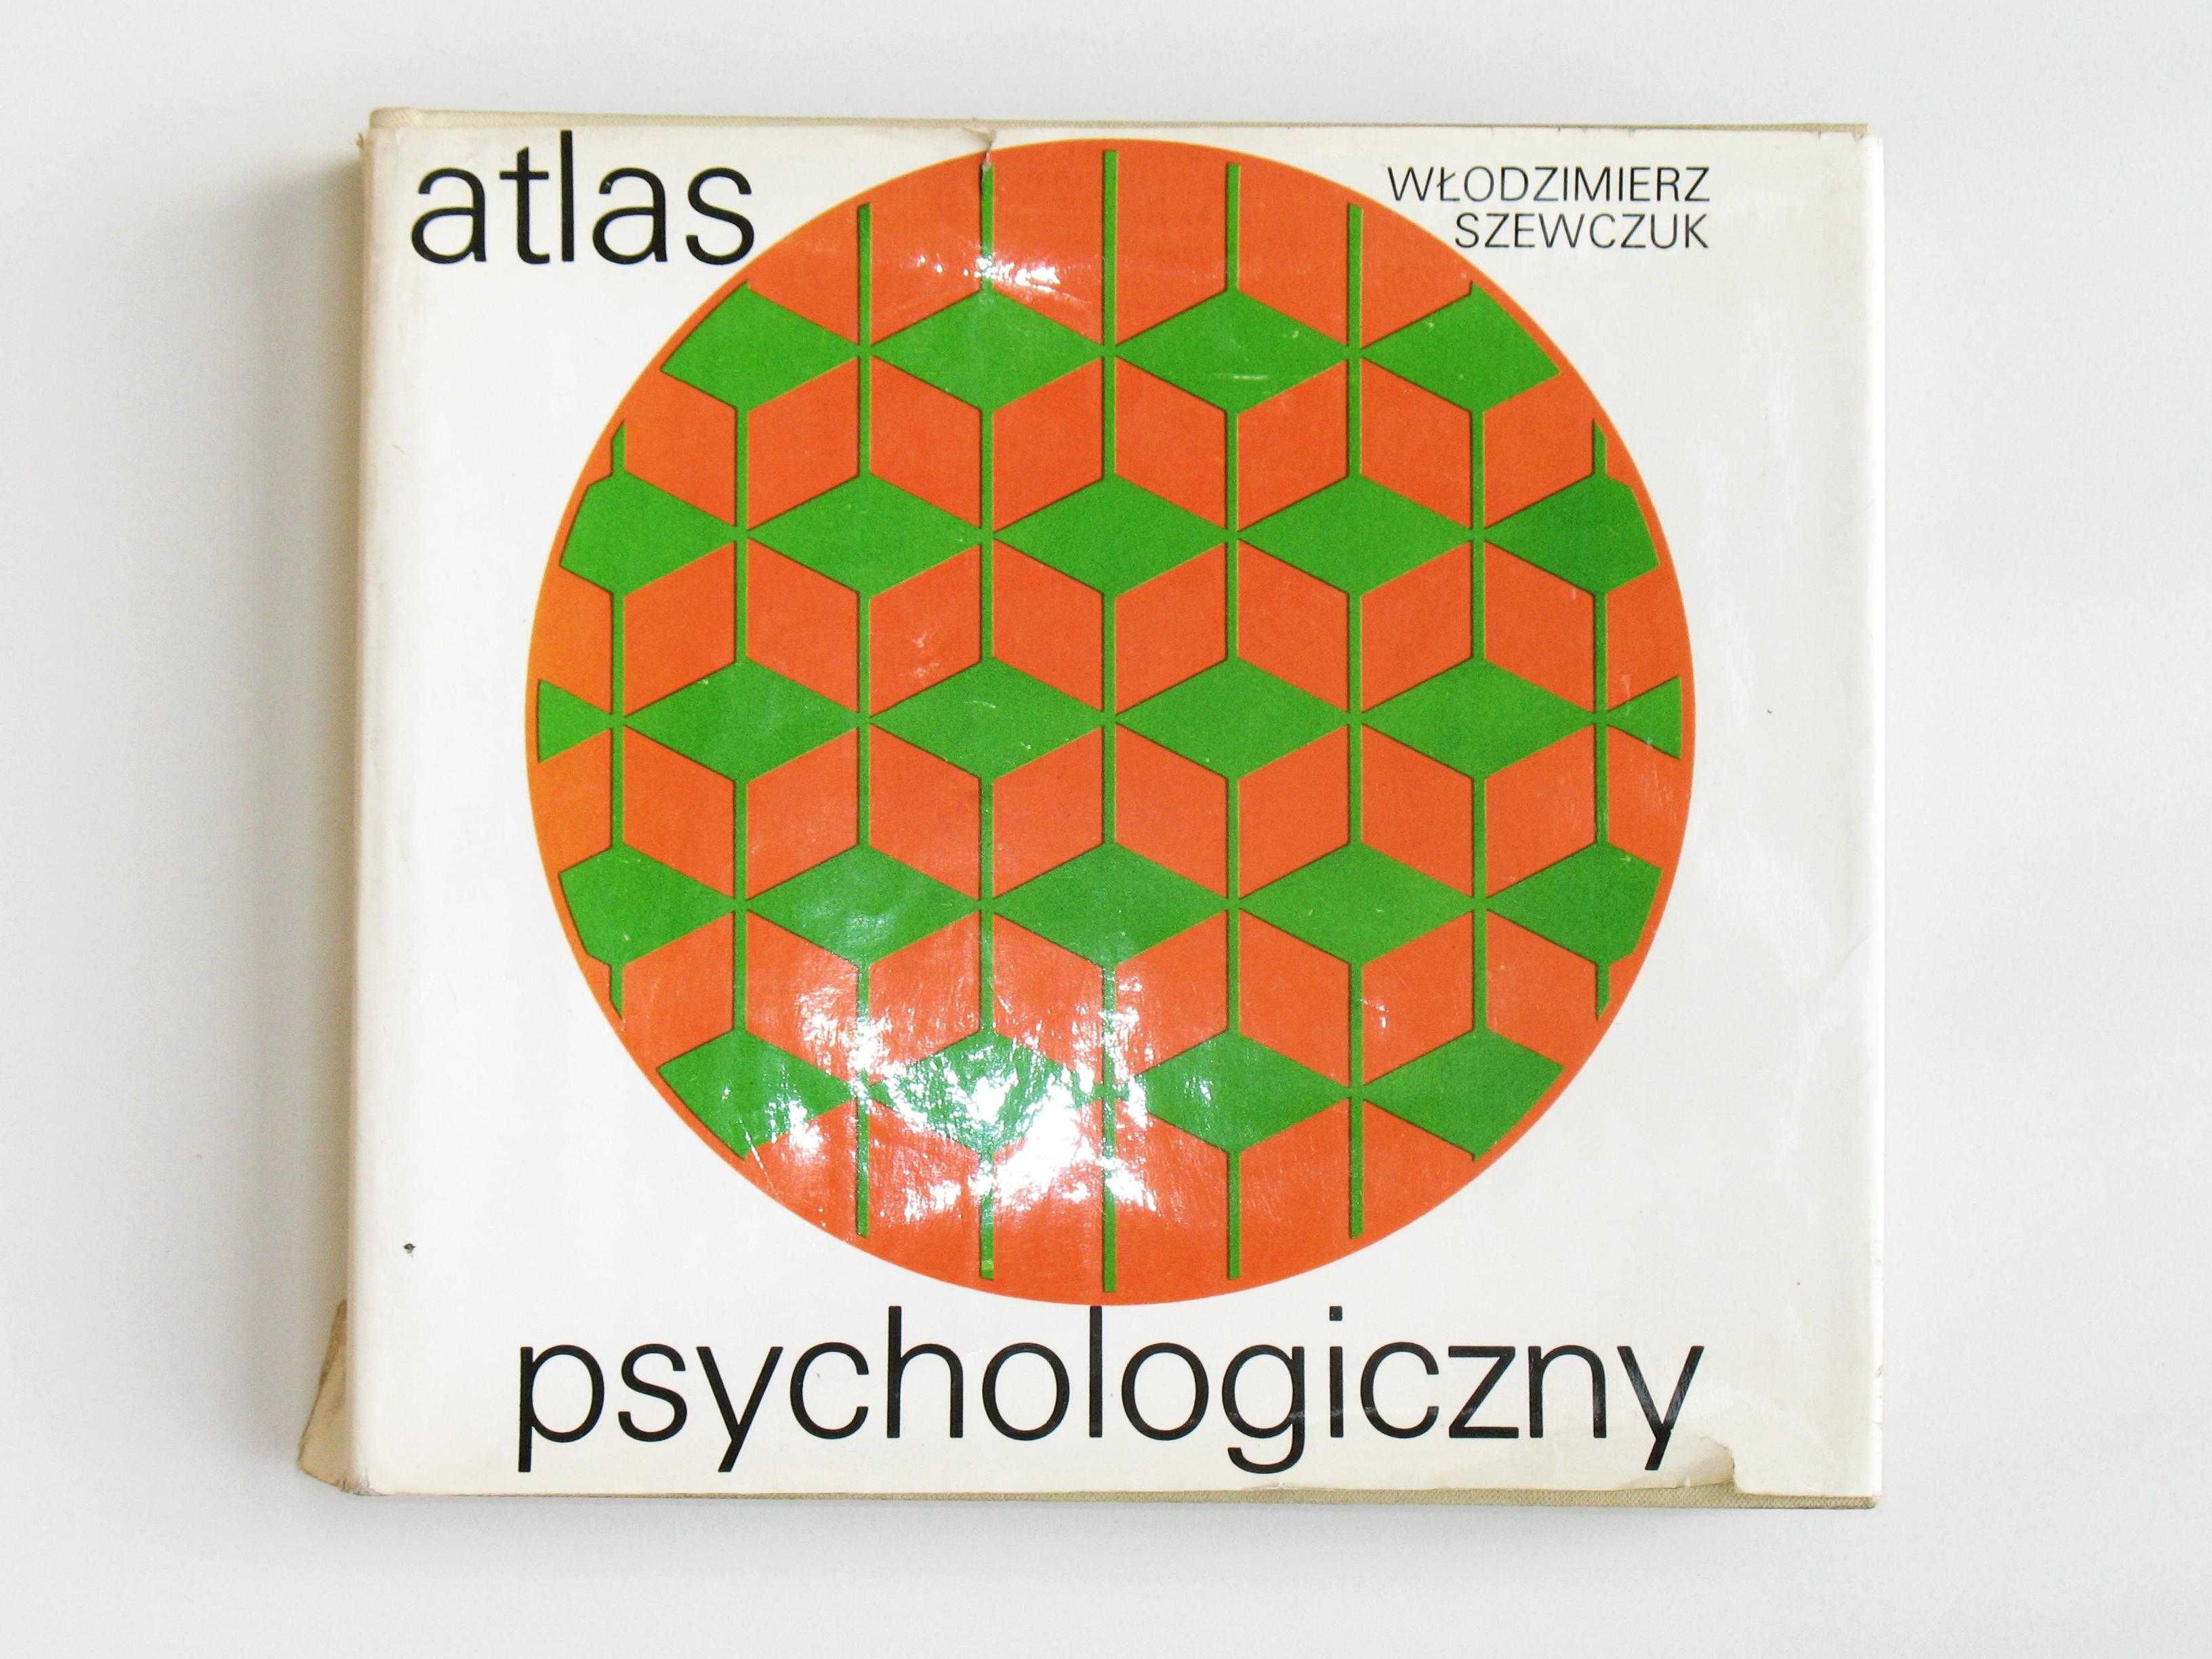 Atlas psychologiczny - Włodzimierz Szewczuk